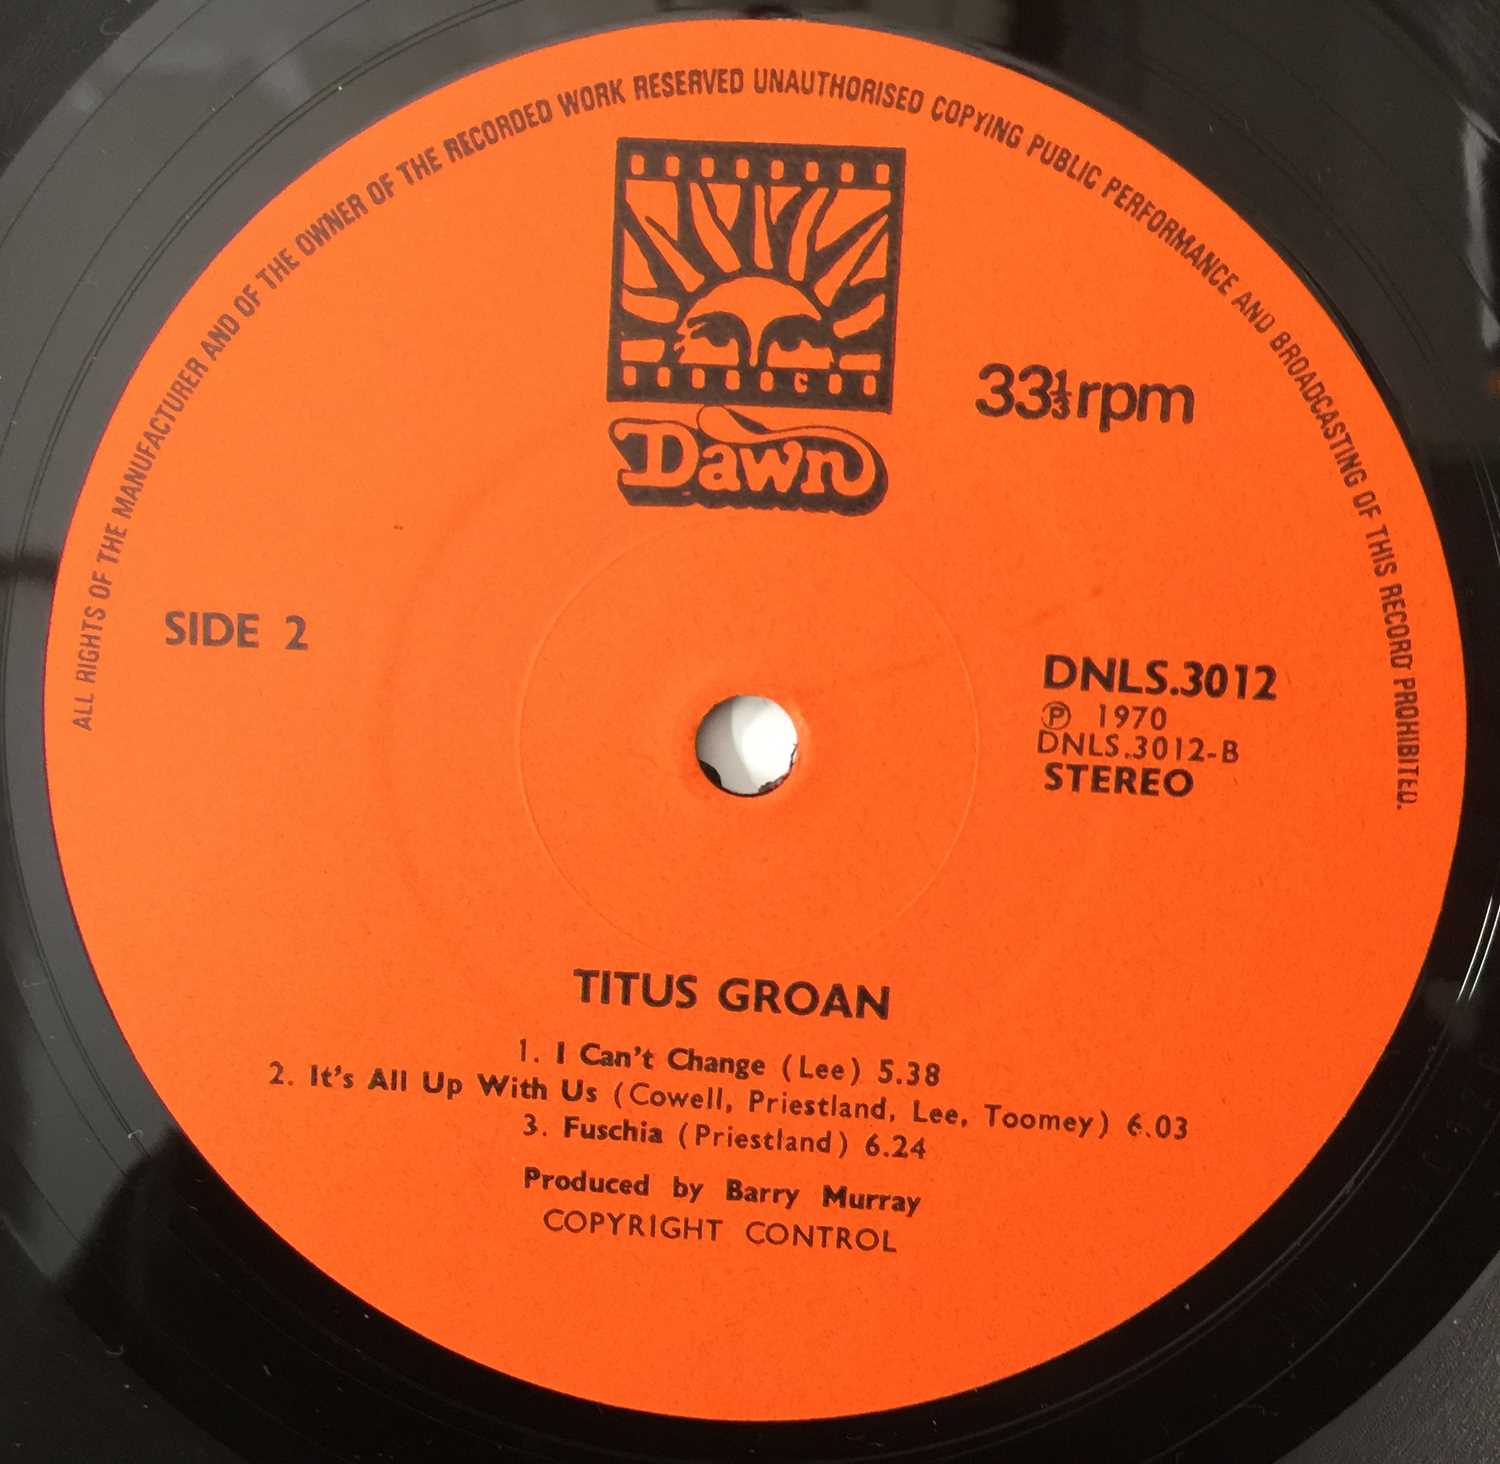 TITUS GROAN - TITUS GROAN LP (UK ORIGINAL PRESSING - DNLS.3012) - Image 5 of 5